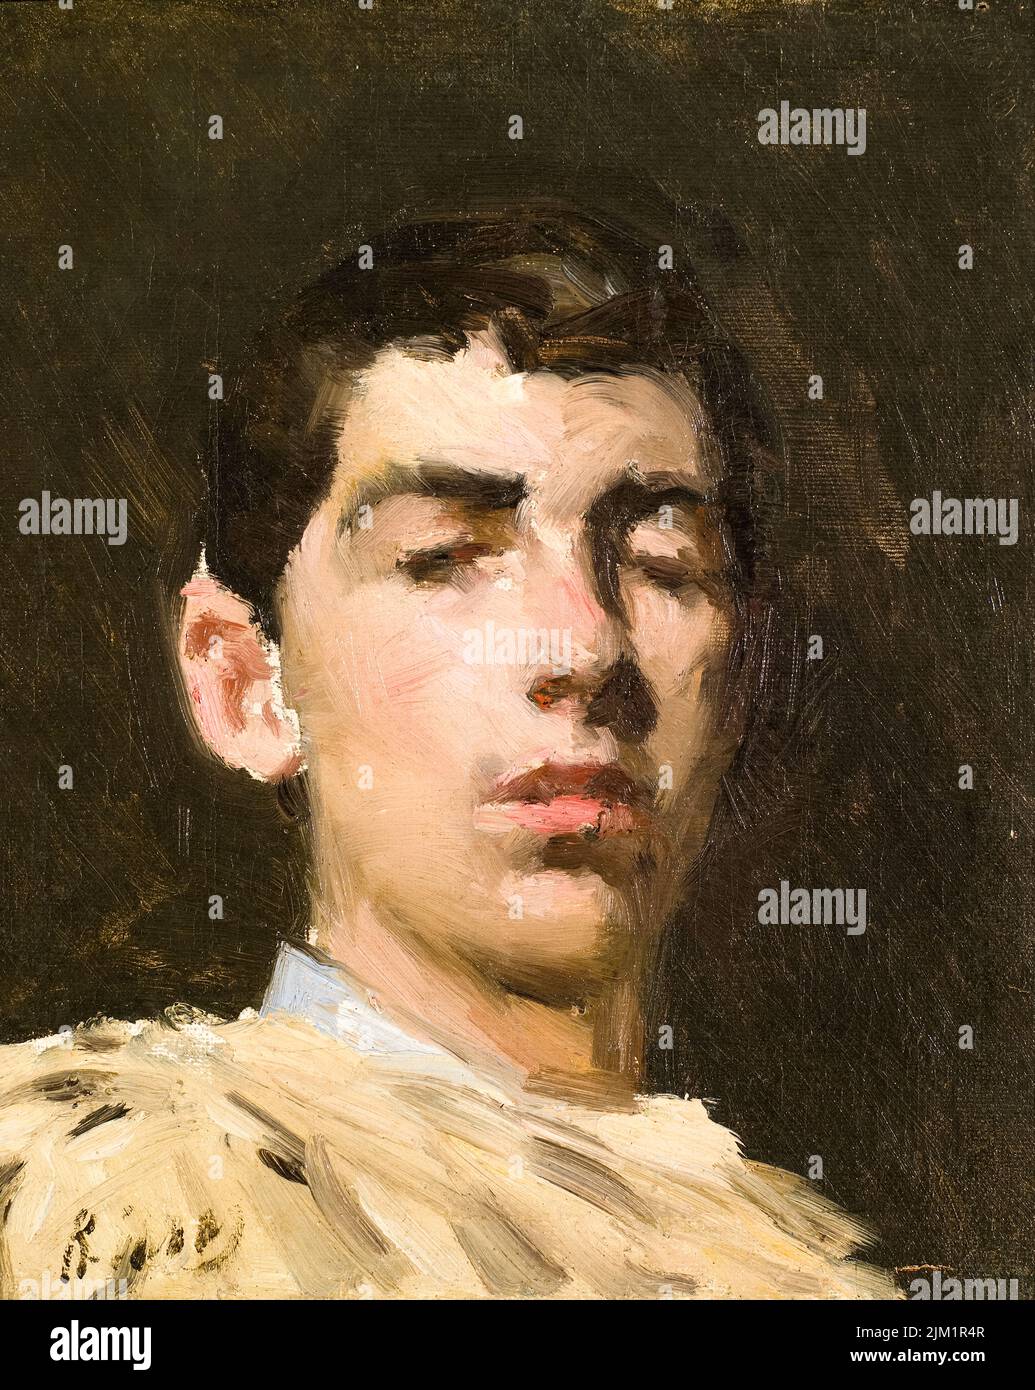 Ramon Casas (1866-1932), autoportrait de l'artiste catalan, peinture à l'huile sur toile vers 1882 Banque D'Images